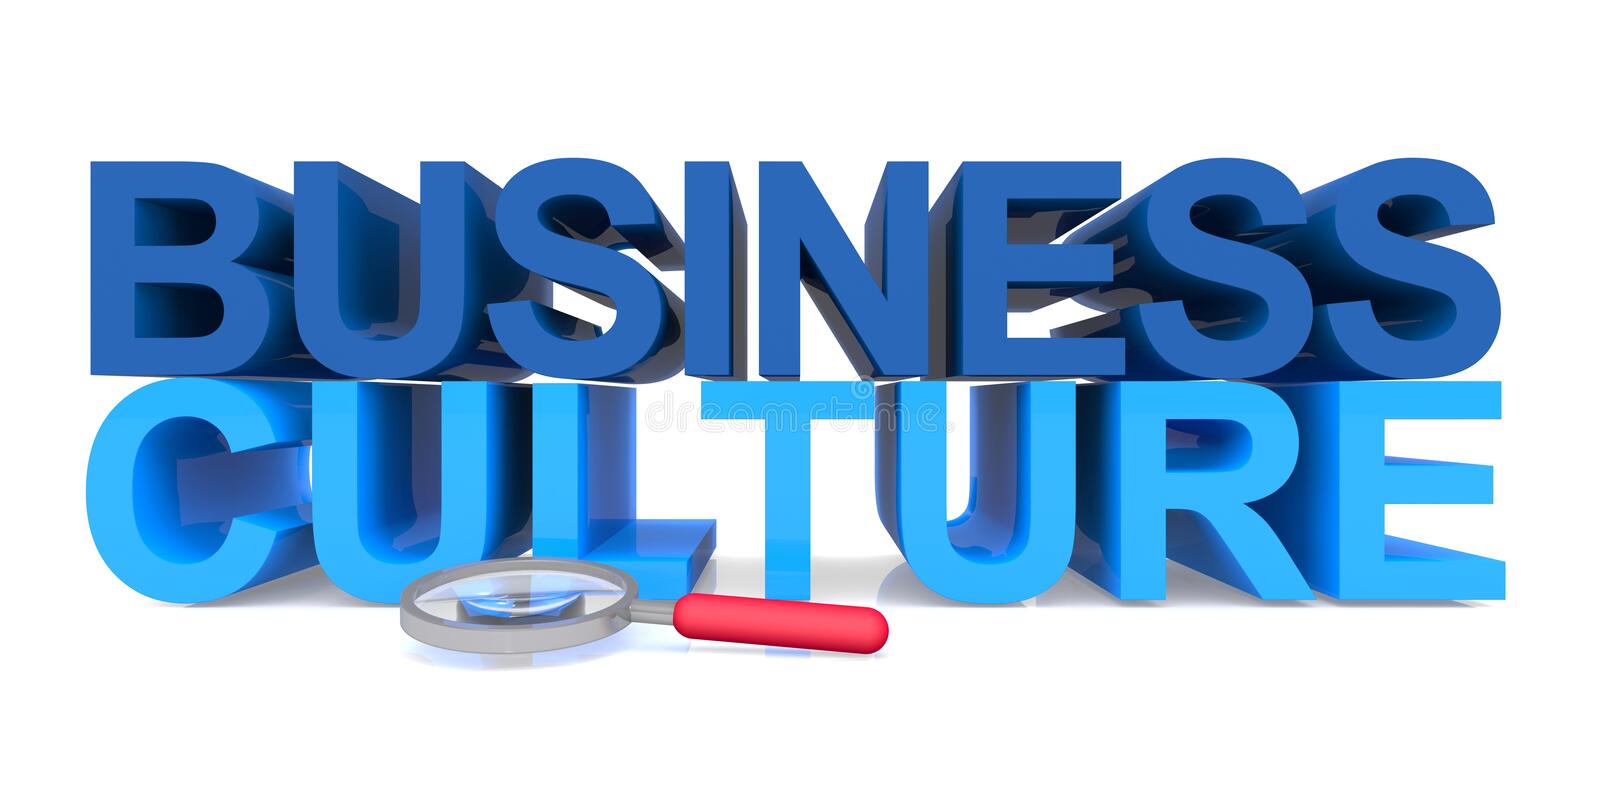 BL-EM1180-134138 - Văn hóa kinh doanh và tinh thần khởi nghiệp